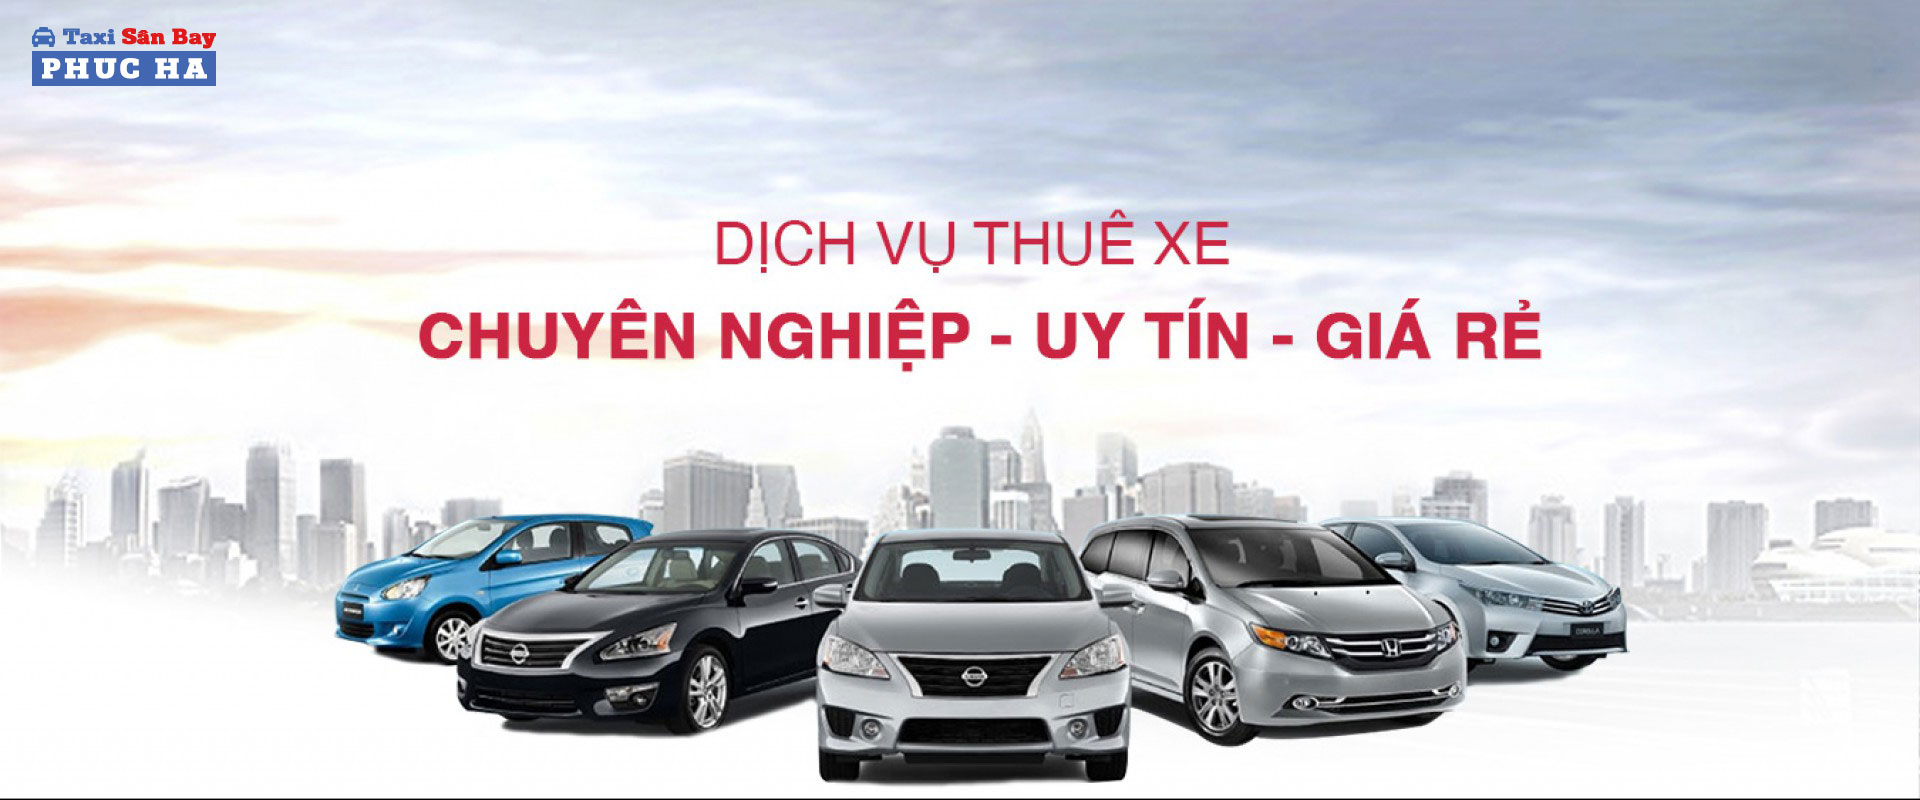 Dịch vụ thuê xe ô tô Đà Nẵng với Phúc Hà Taxi